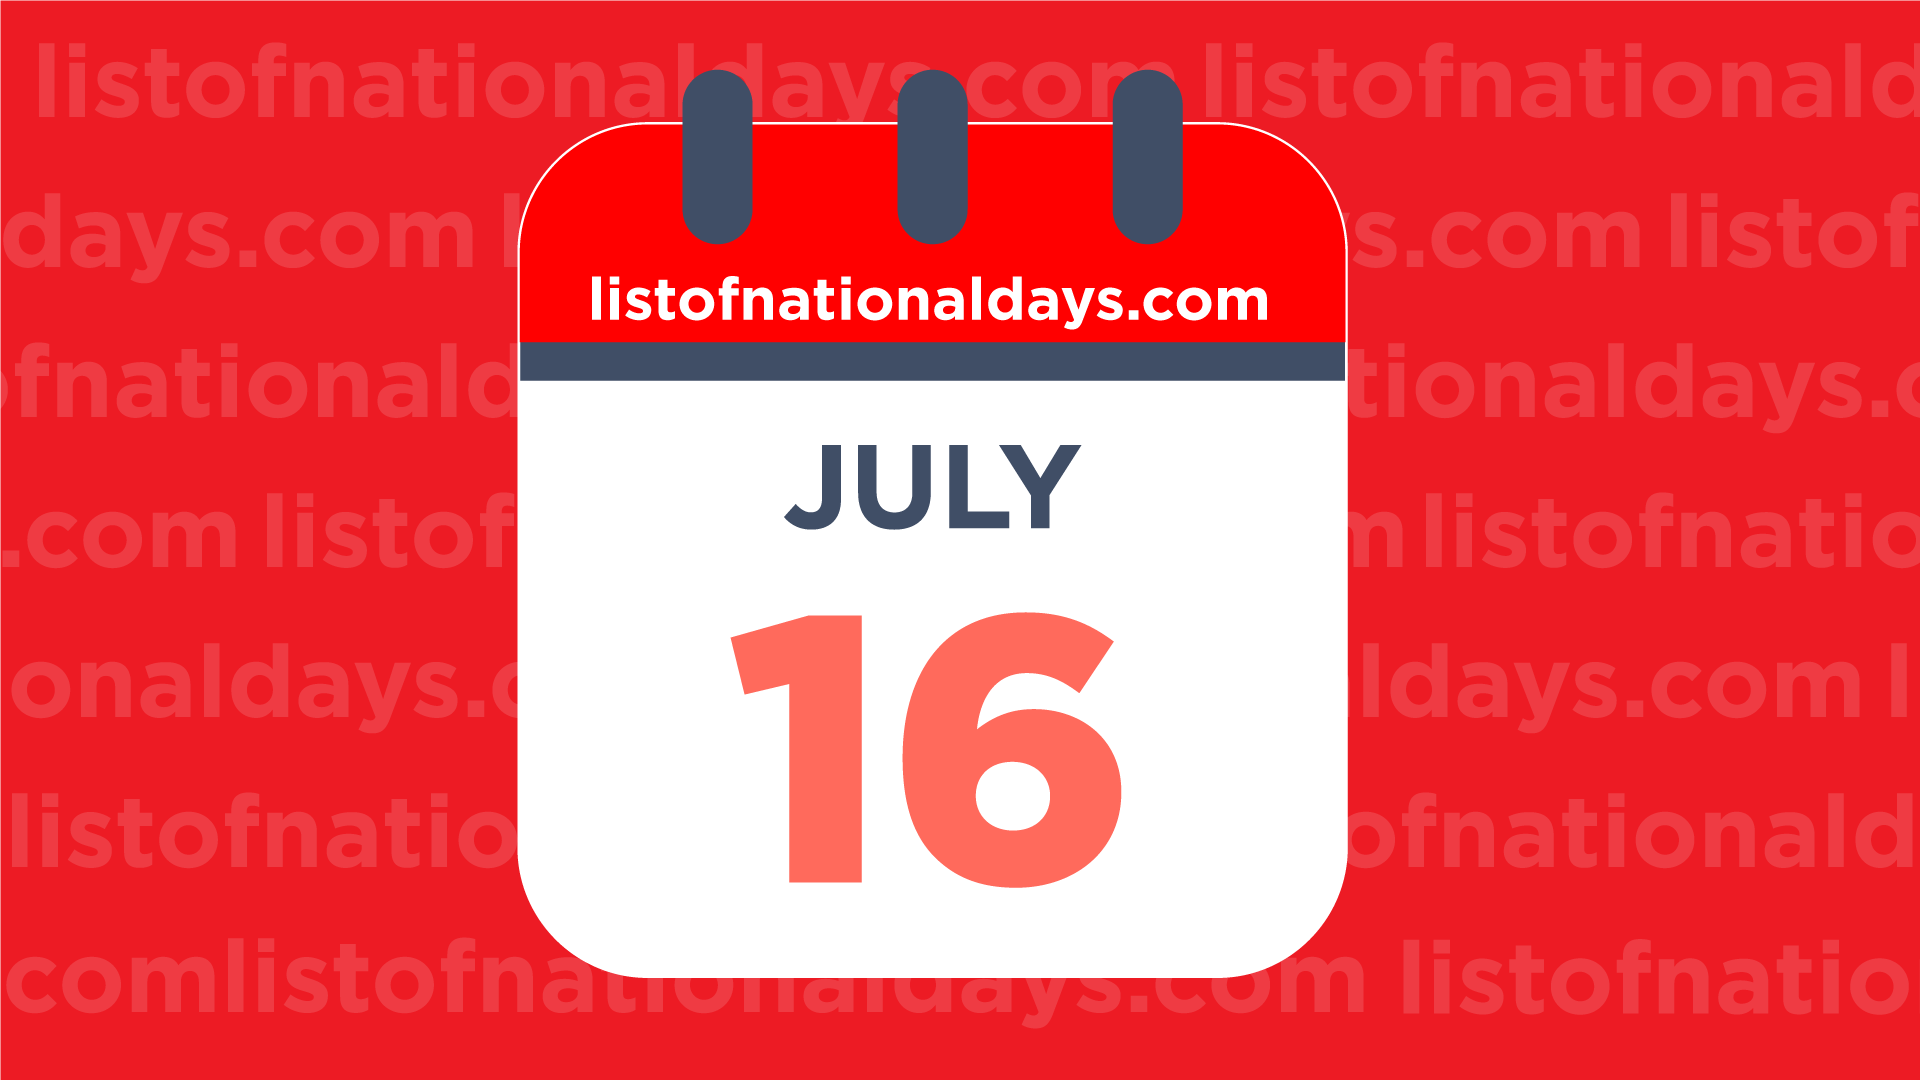 Que célébrons-nous le 16 juillet?